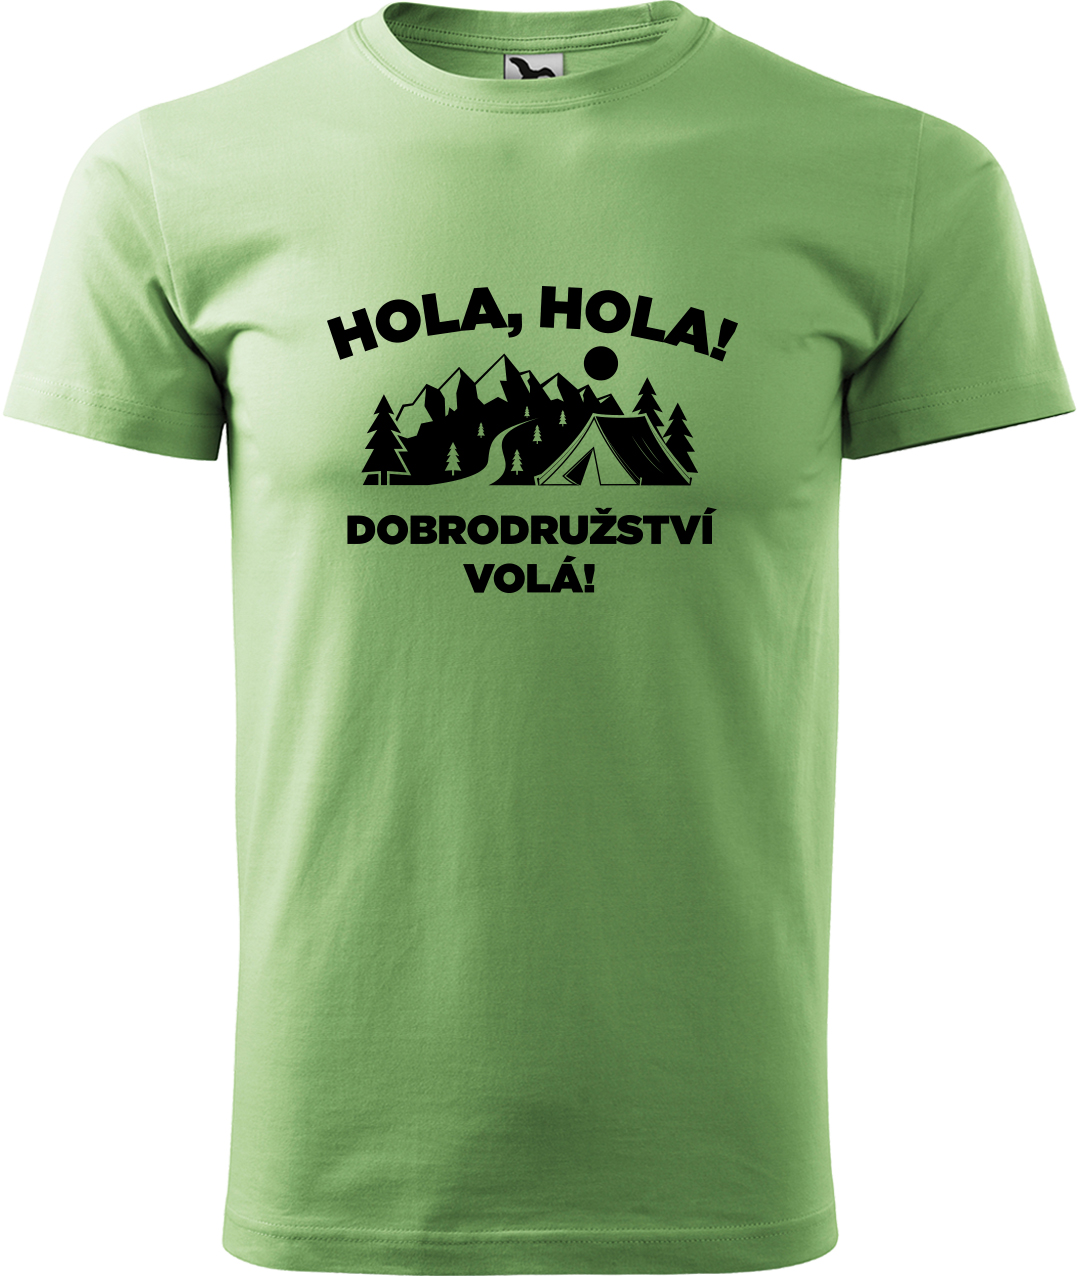 Pánské cestovatelské tričko - Hola hola! Dobrodružství volá! Velikost: M, Barva: Trávově zelená (39), Střih: pánský